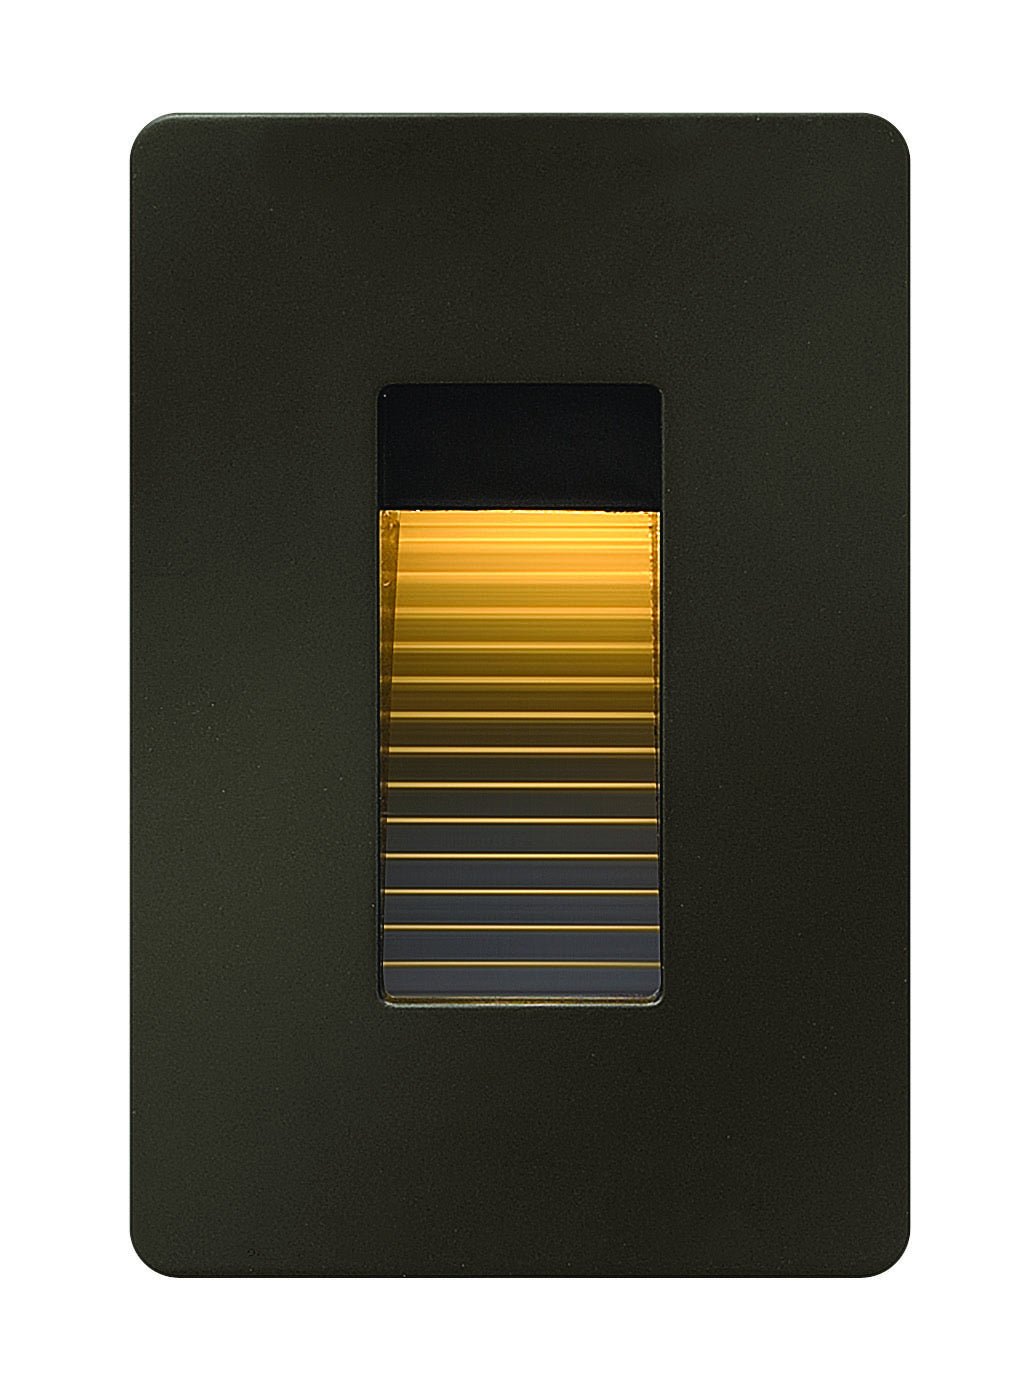 Hinkley - 58504BZ - LED Landscape Deck - Luna - Bronze